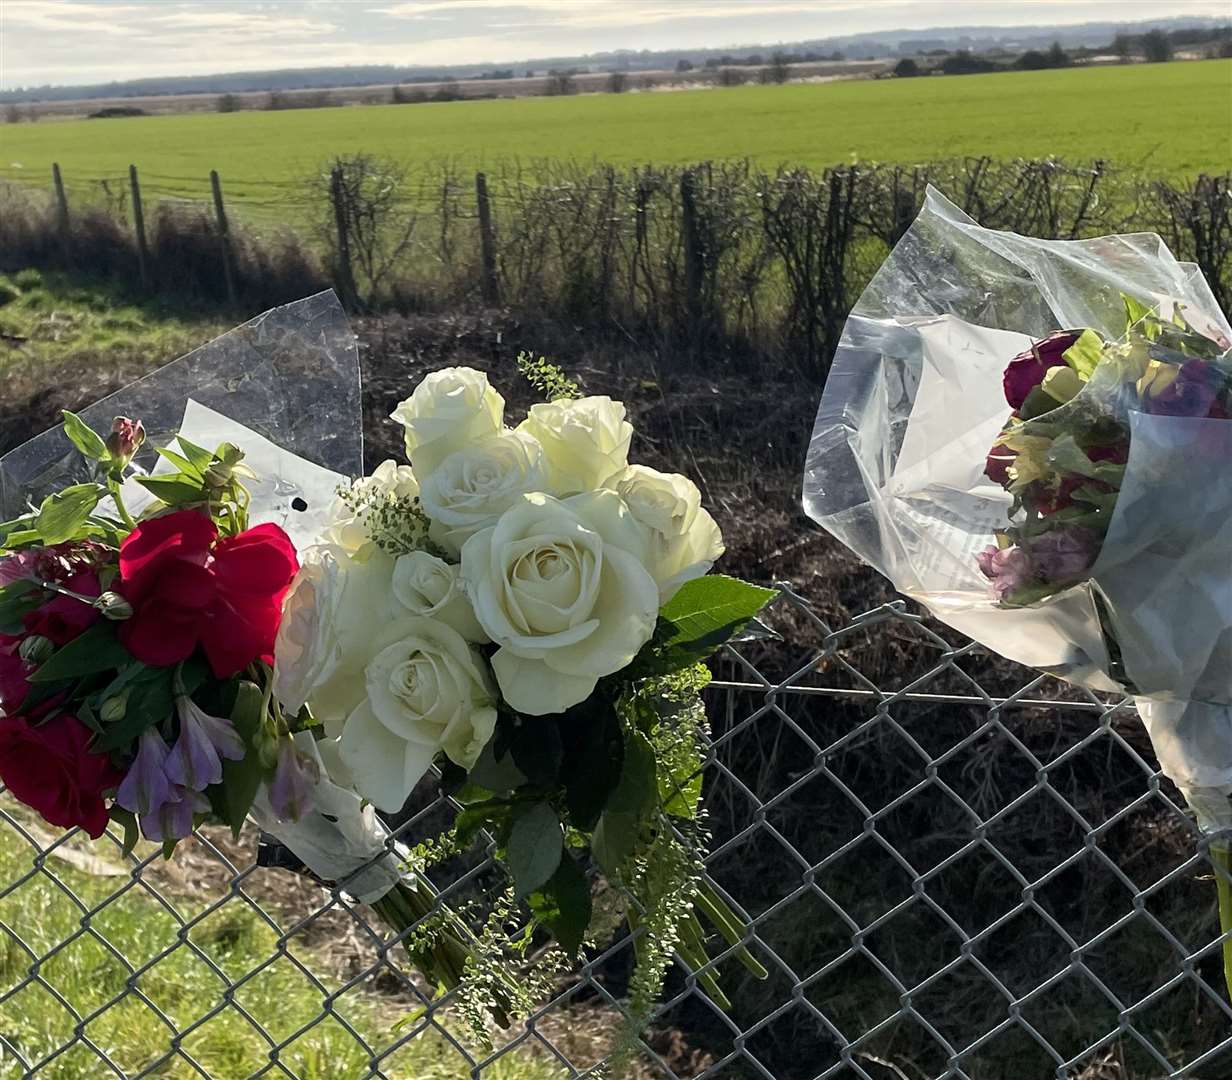 Flowers were left in tribute near the scene